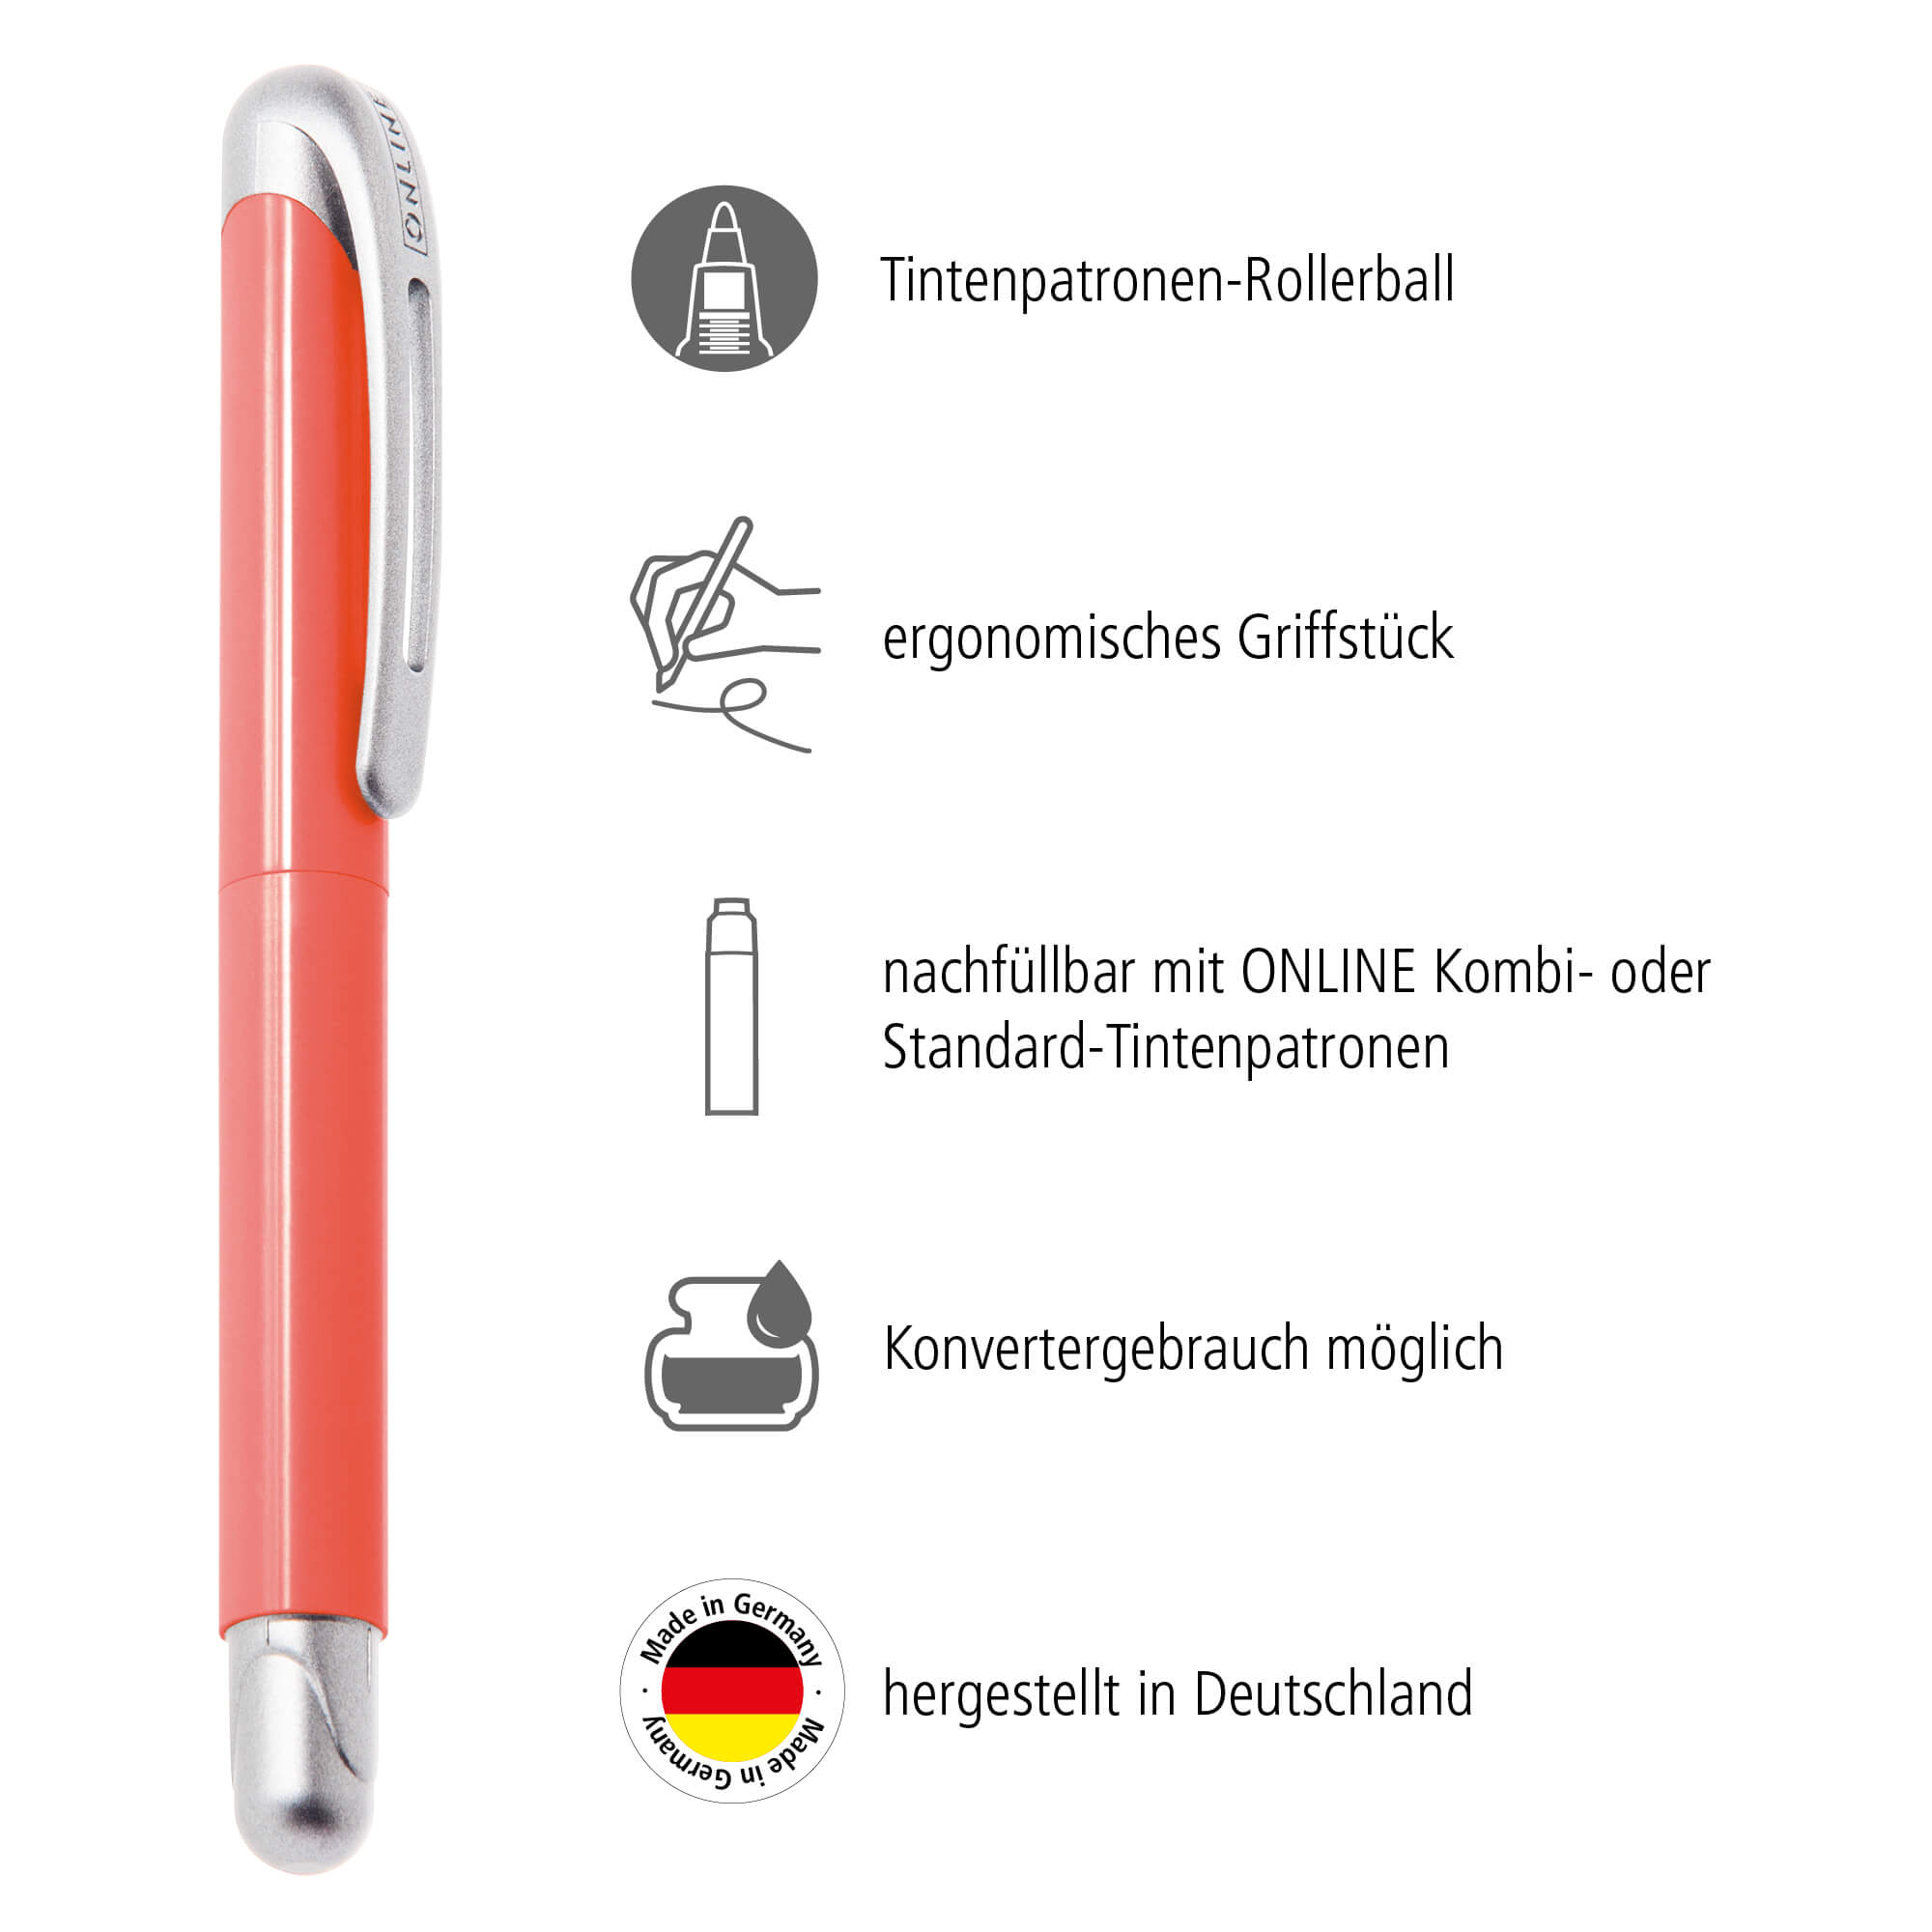 Tintenpatronen-Rollerball mit ergonomischem Griffstück, hergestellt in Deutschland